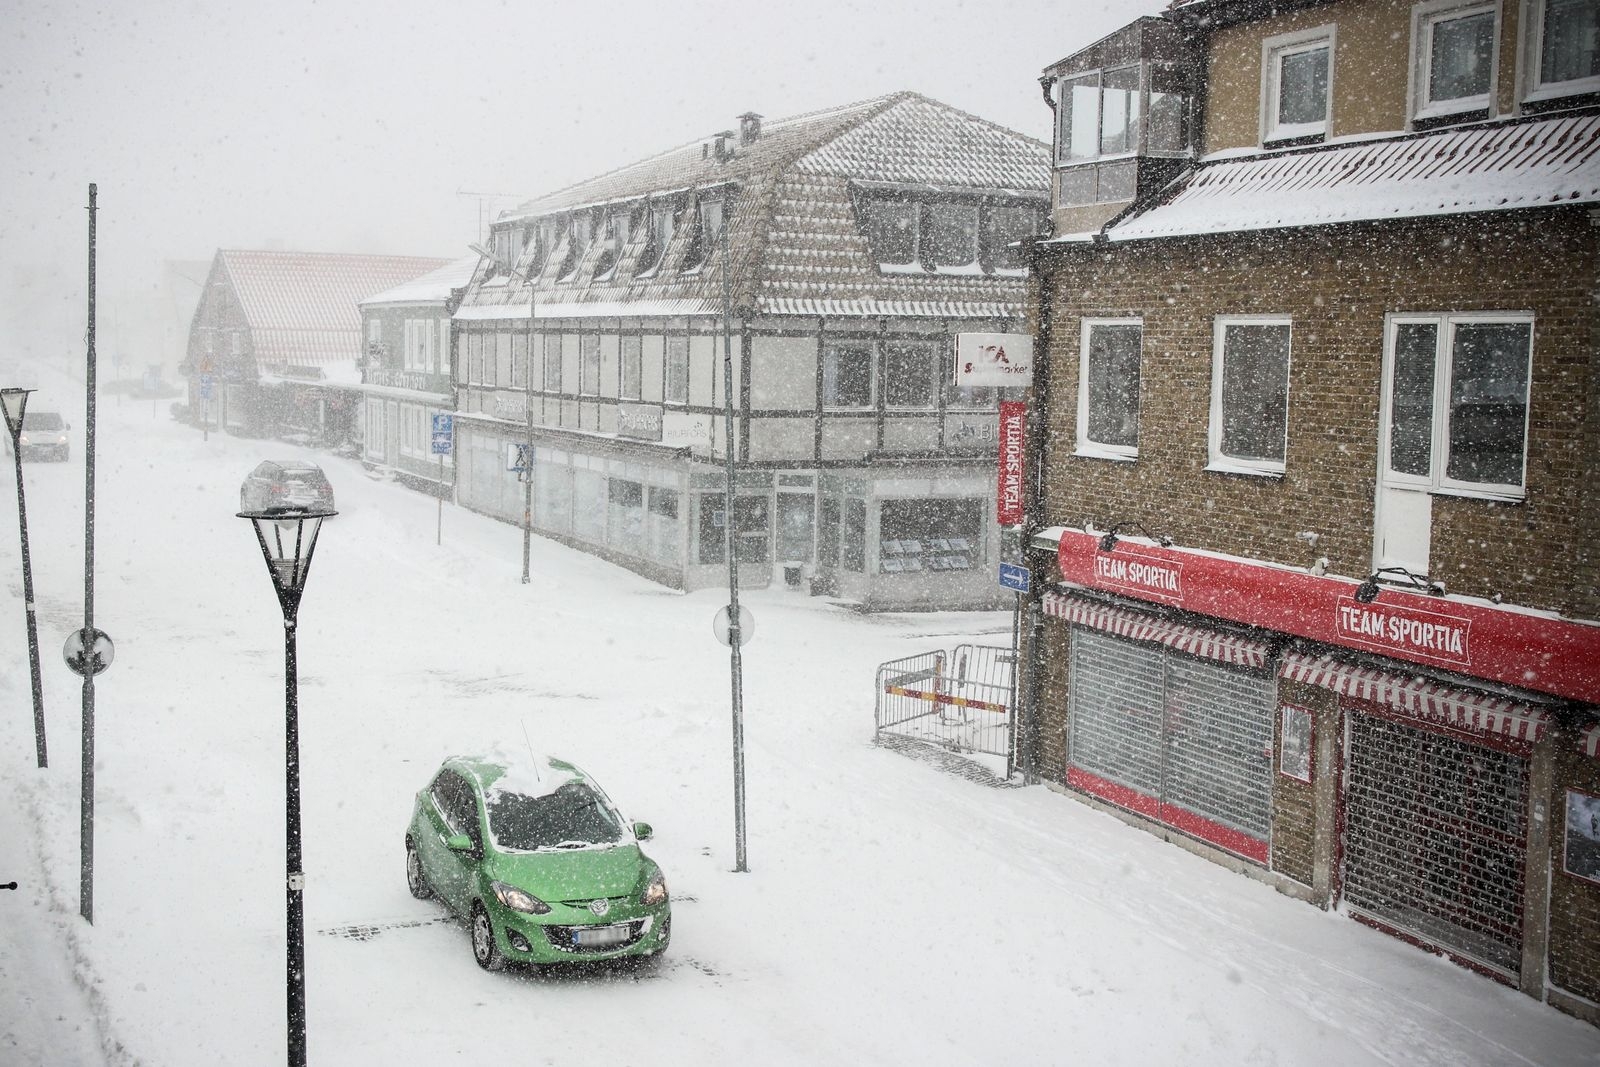 Det fortsatte snöa rejält i Simrishamn på torsdagen.